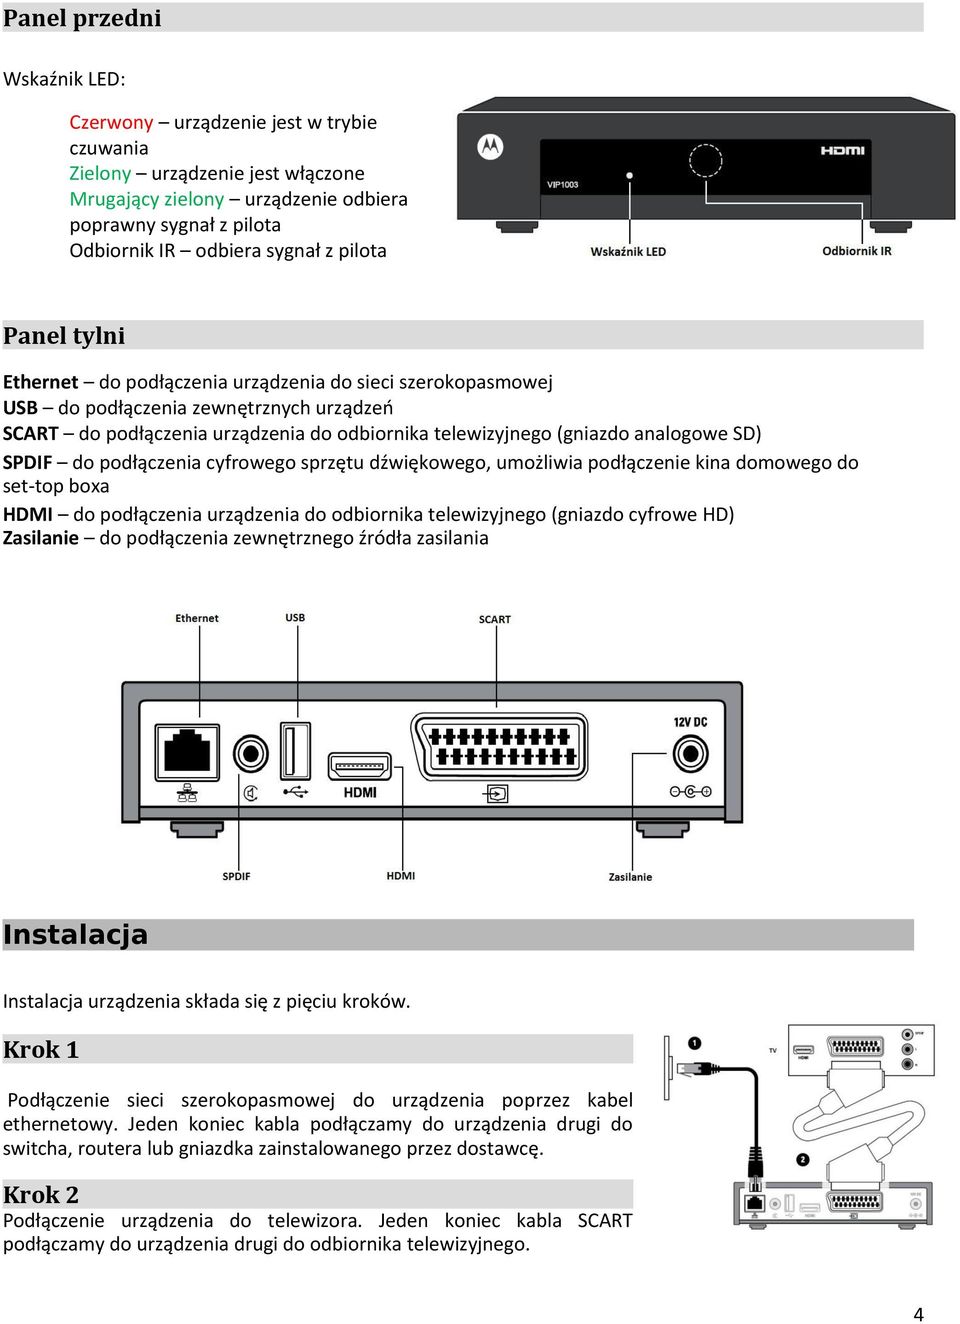 SD) SPDIF do podłączenia cyfrowego sprzętu dźwiękowego, umożliwia podłączenie kina domowego do set-top boxa HDMI do podłączenia urządzenia do odbiornika telewizyjnego (gniazdo cyfrowe HD) Zasilanie